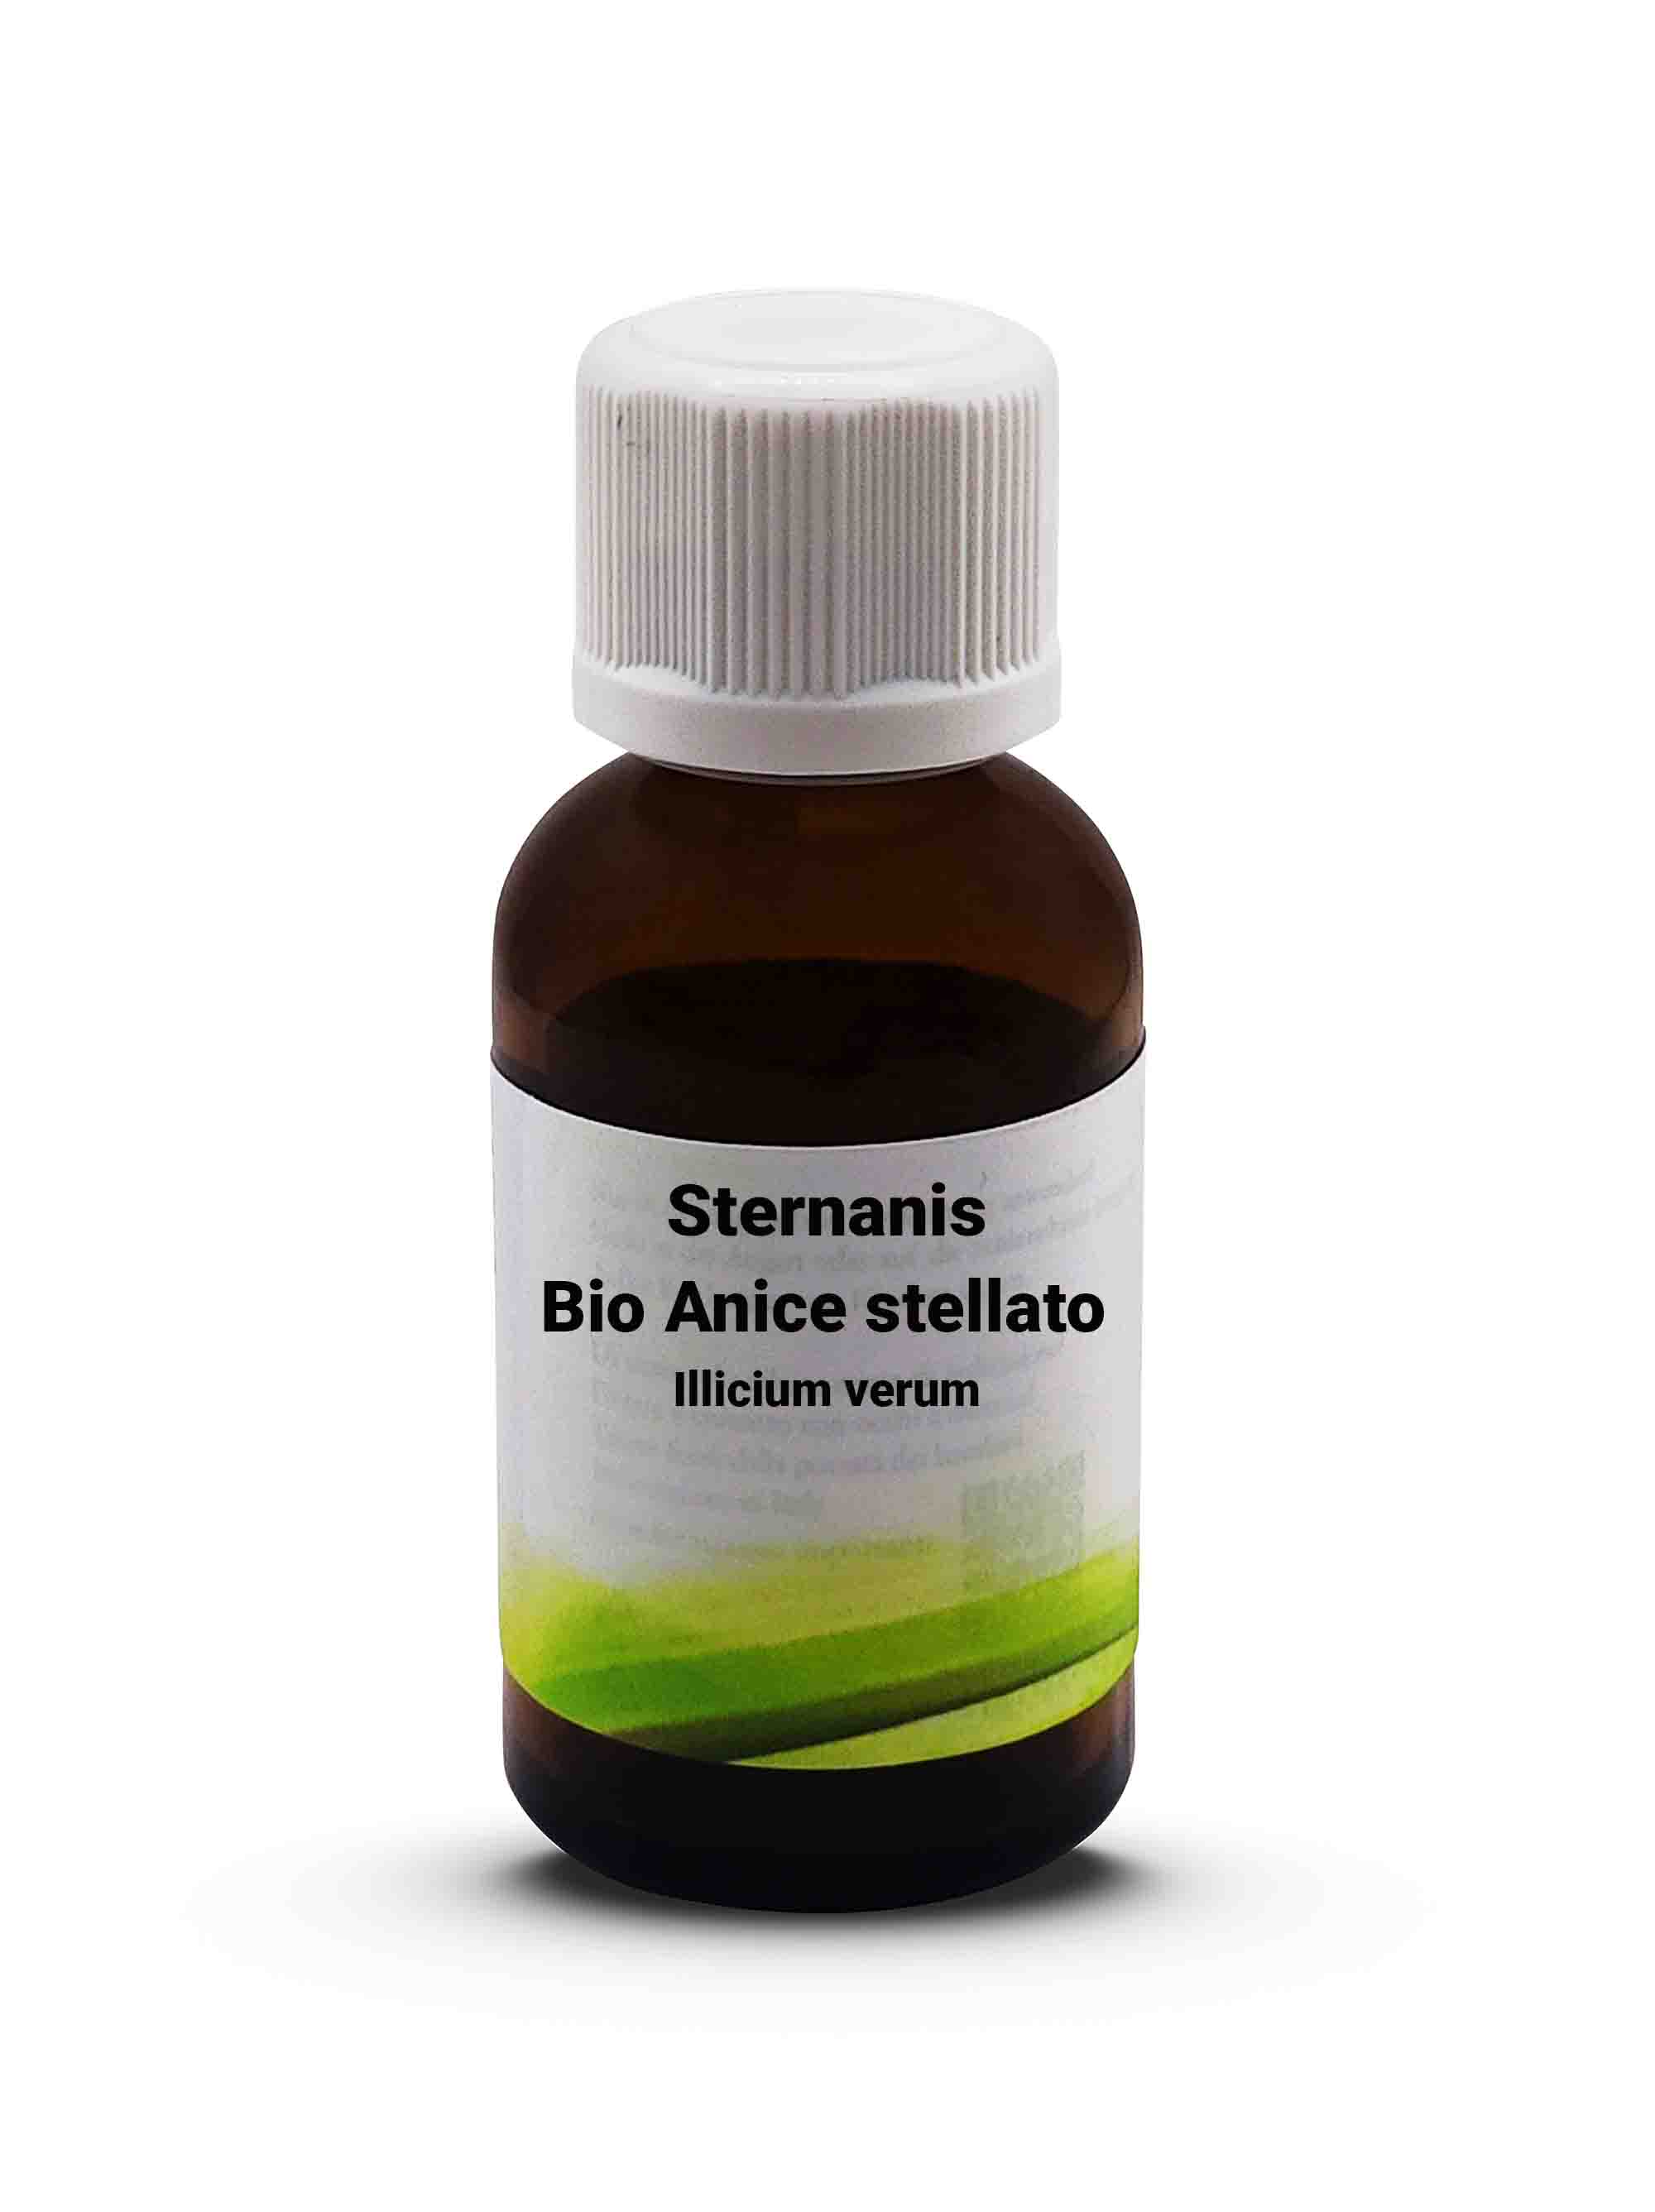 BIo Anice stellato - Illicium verum